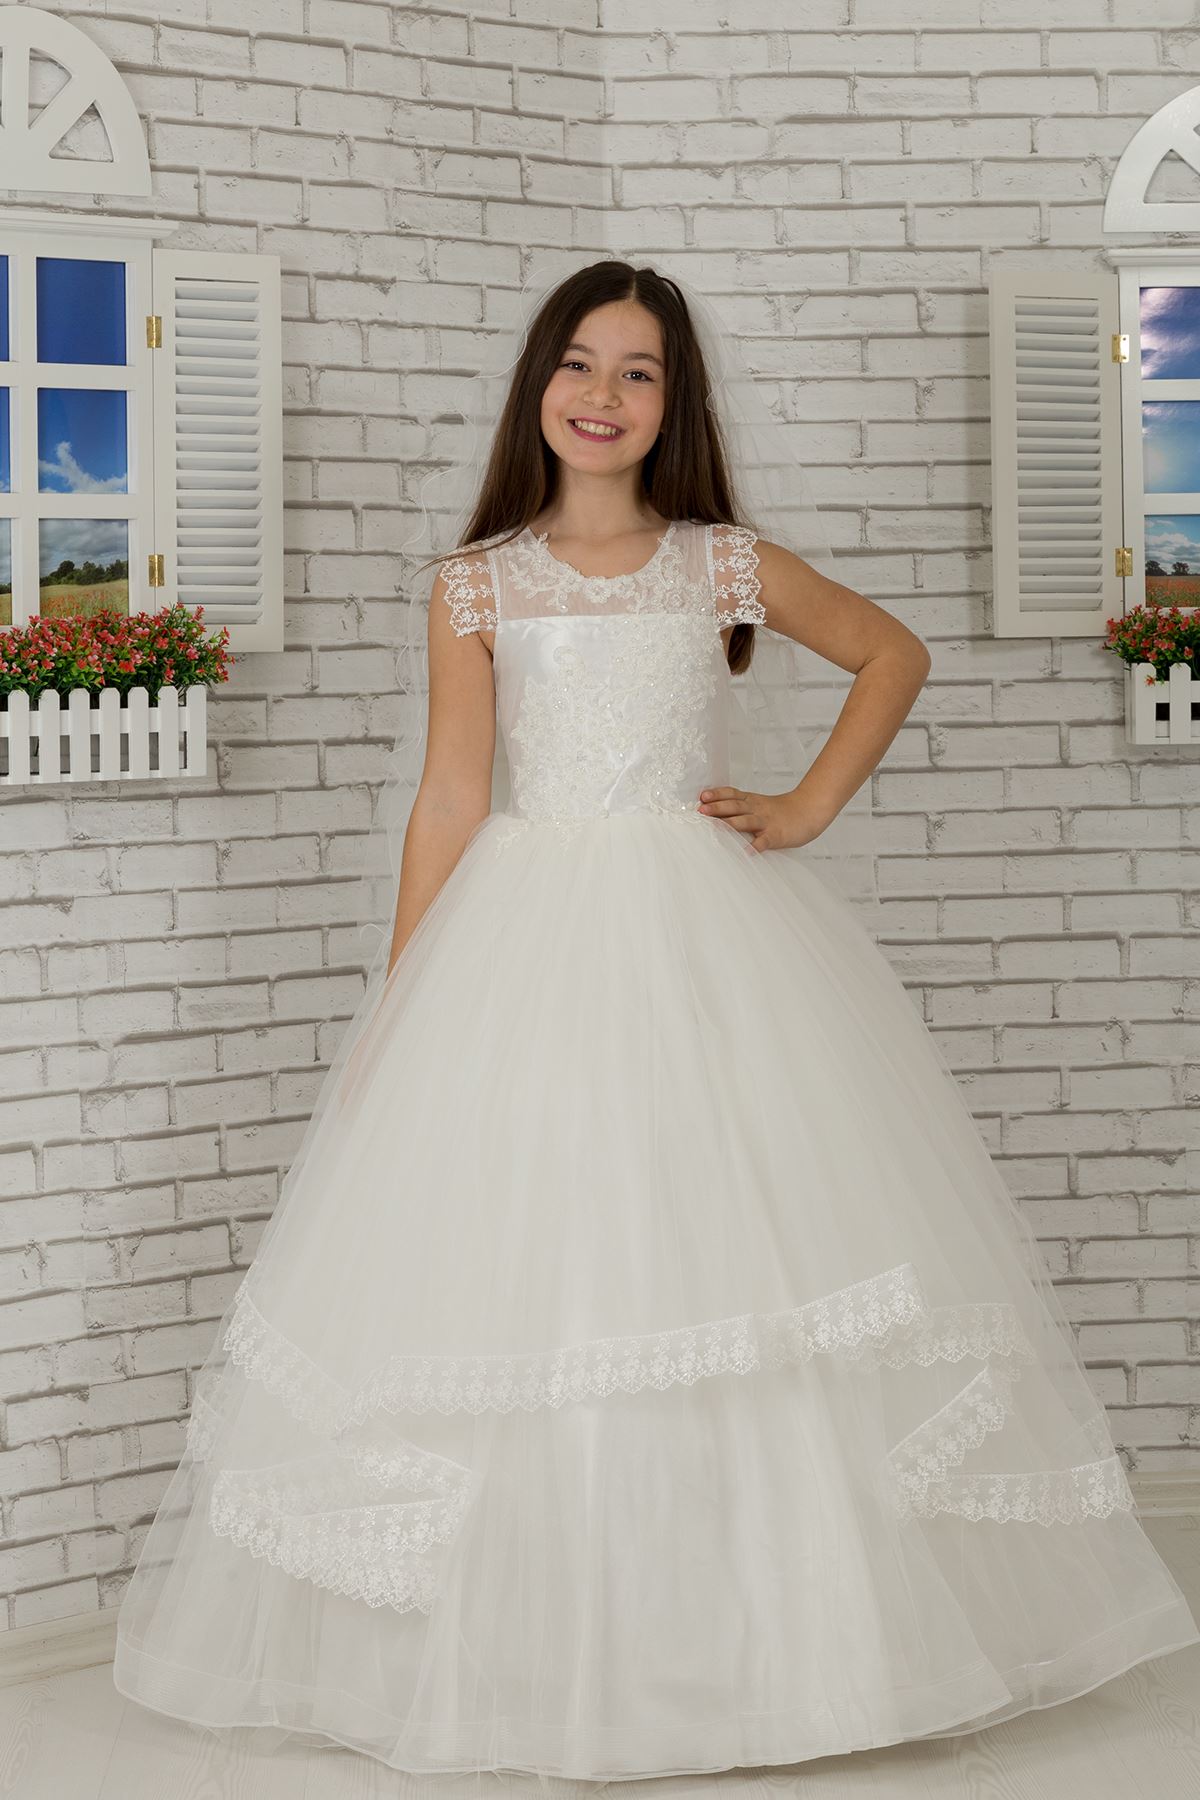 שמלת הערב של הילדה פלאפי עם פירוט כתף, רקום, טול 601 שמנת